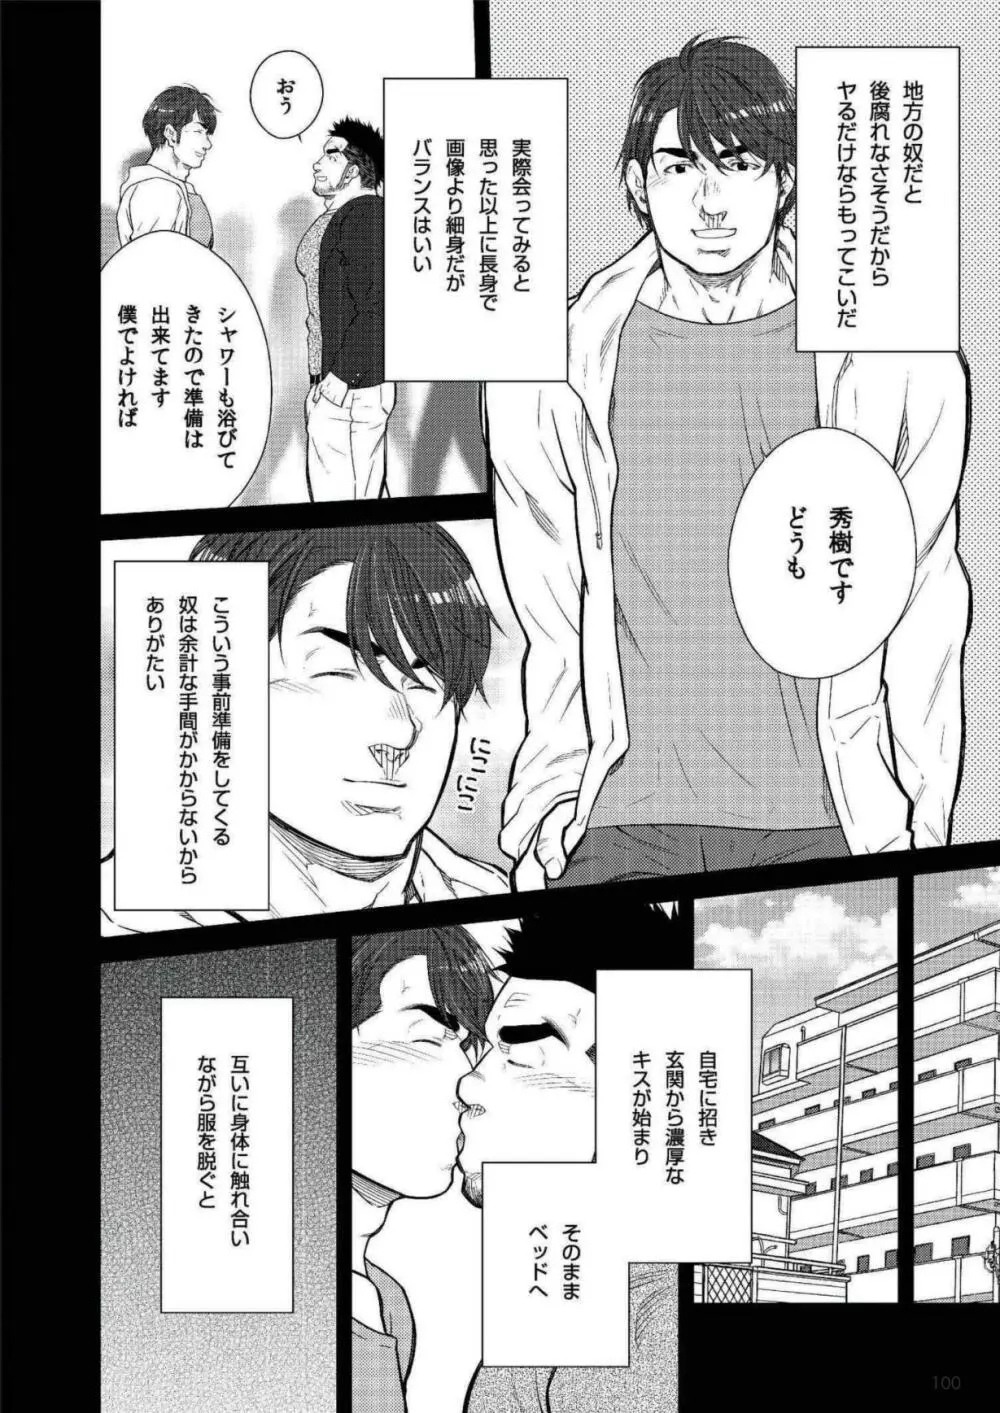 Terujirou - 晃次郎 - Badi Bʌ́di (バディ) 118 (Dec 2015) Page.2